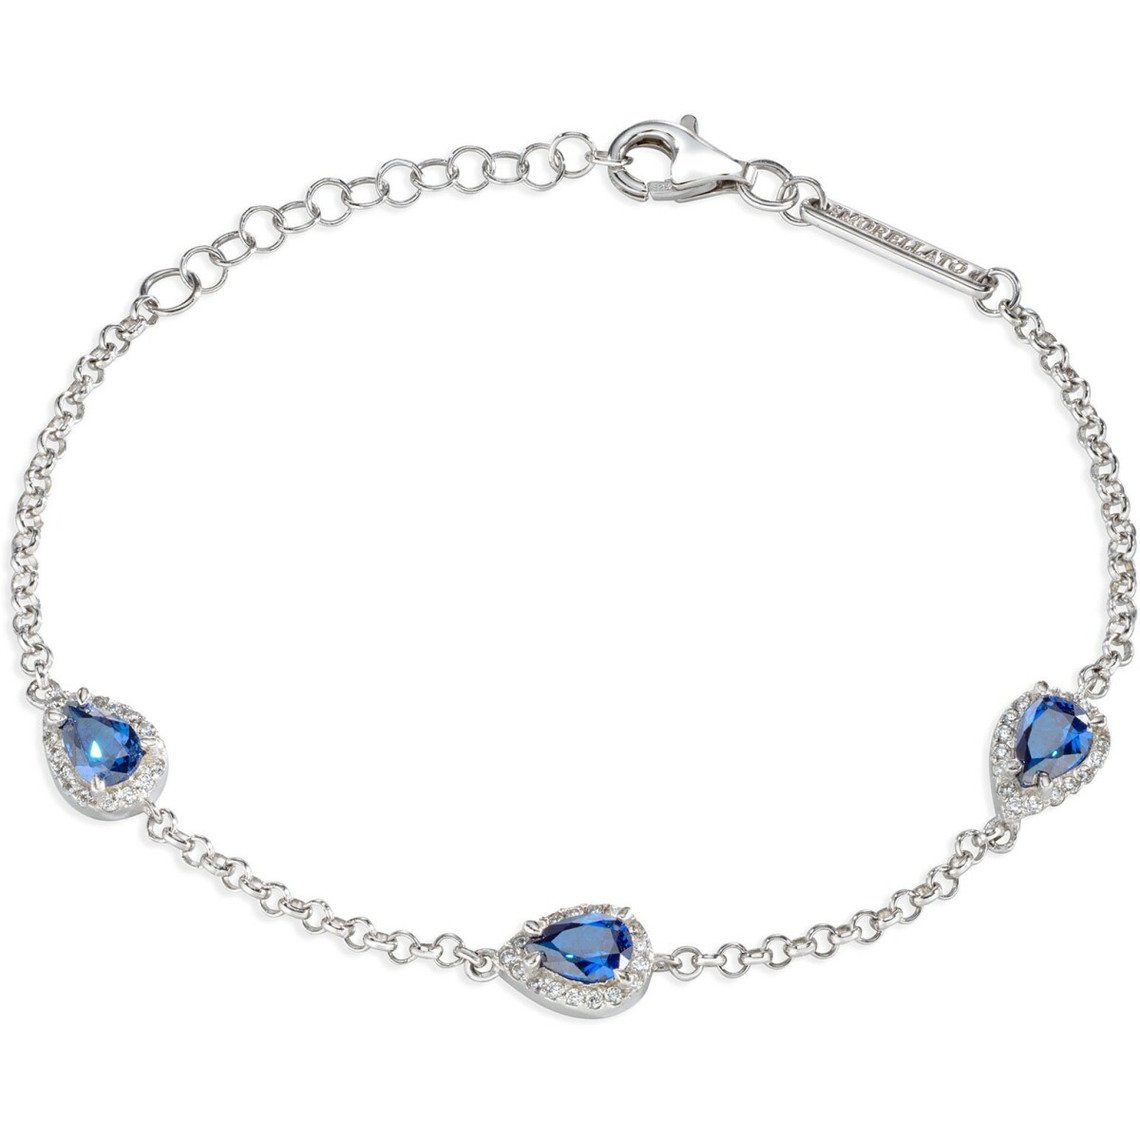 Bracelet Morellato SAIW11 - Bracelet Argent Cristaux Bleu Femme